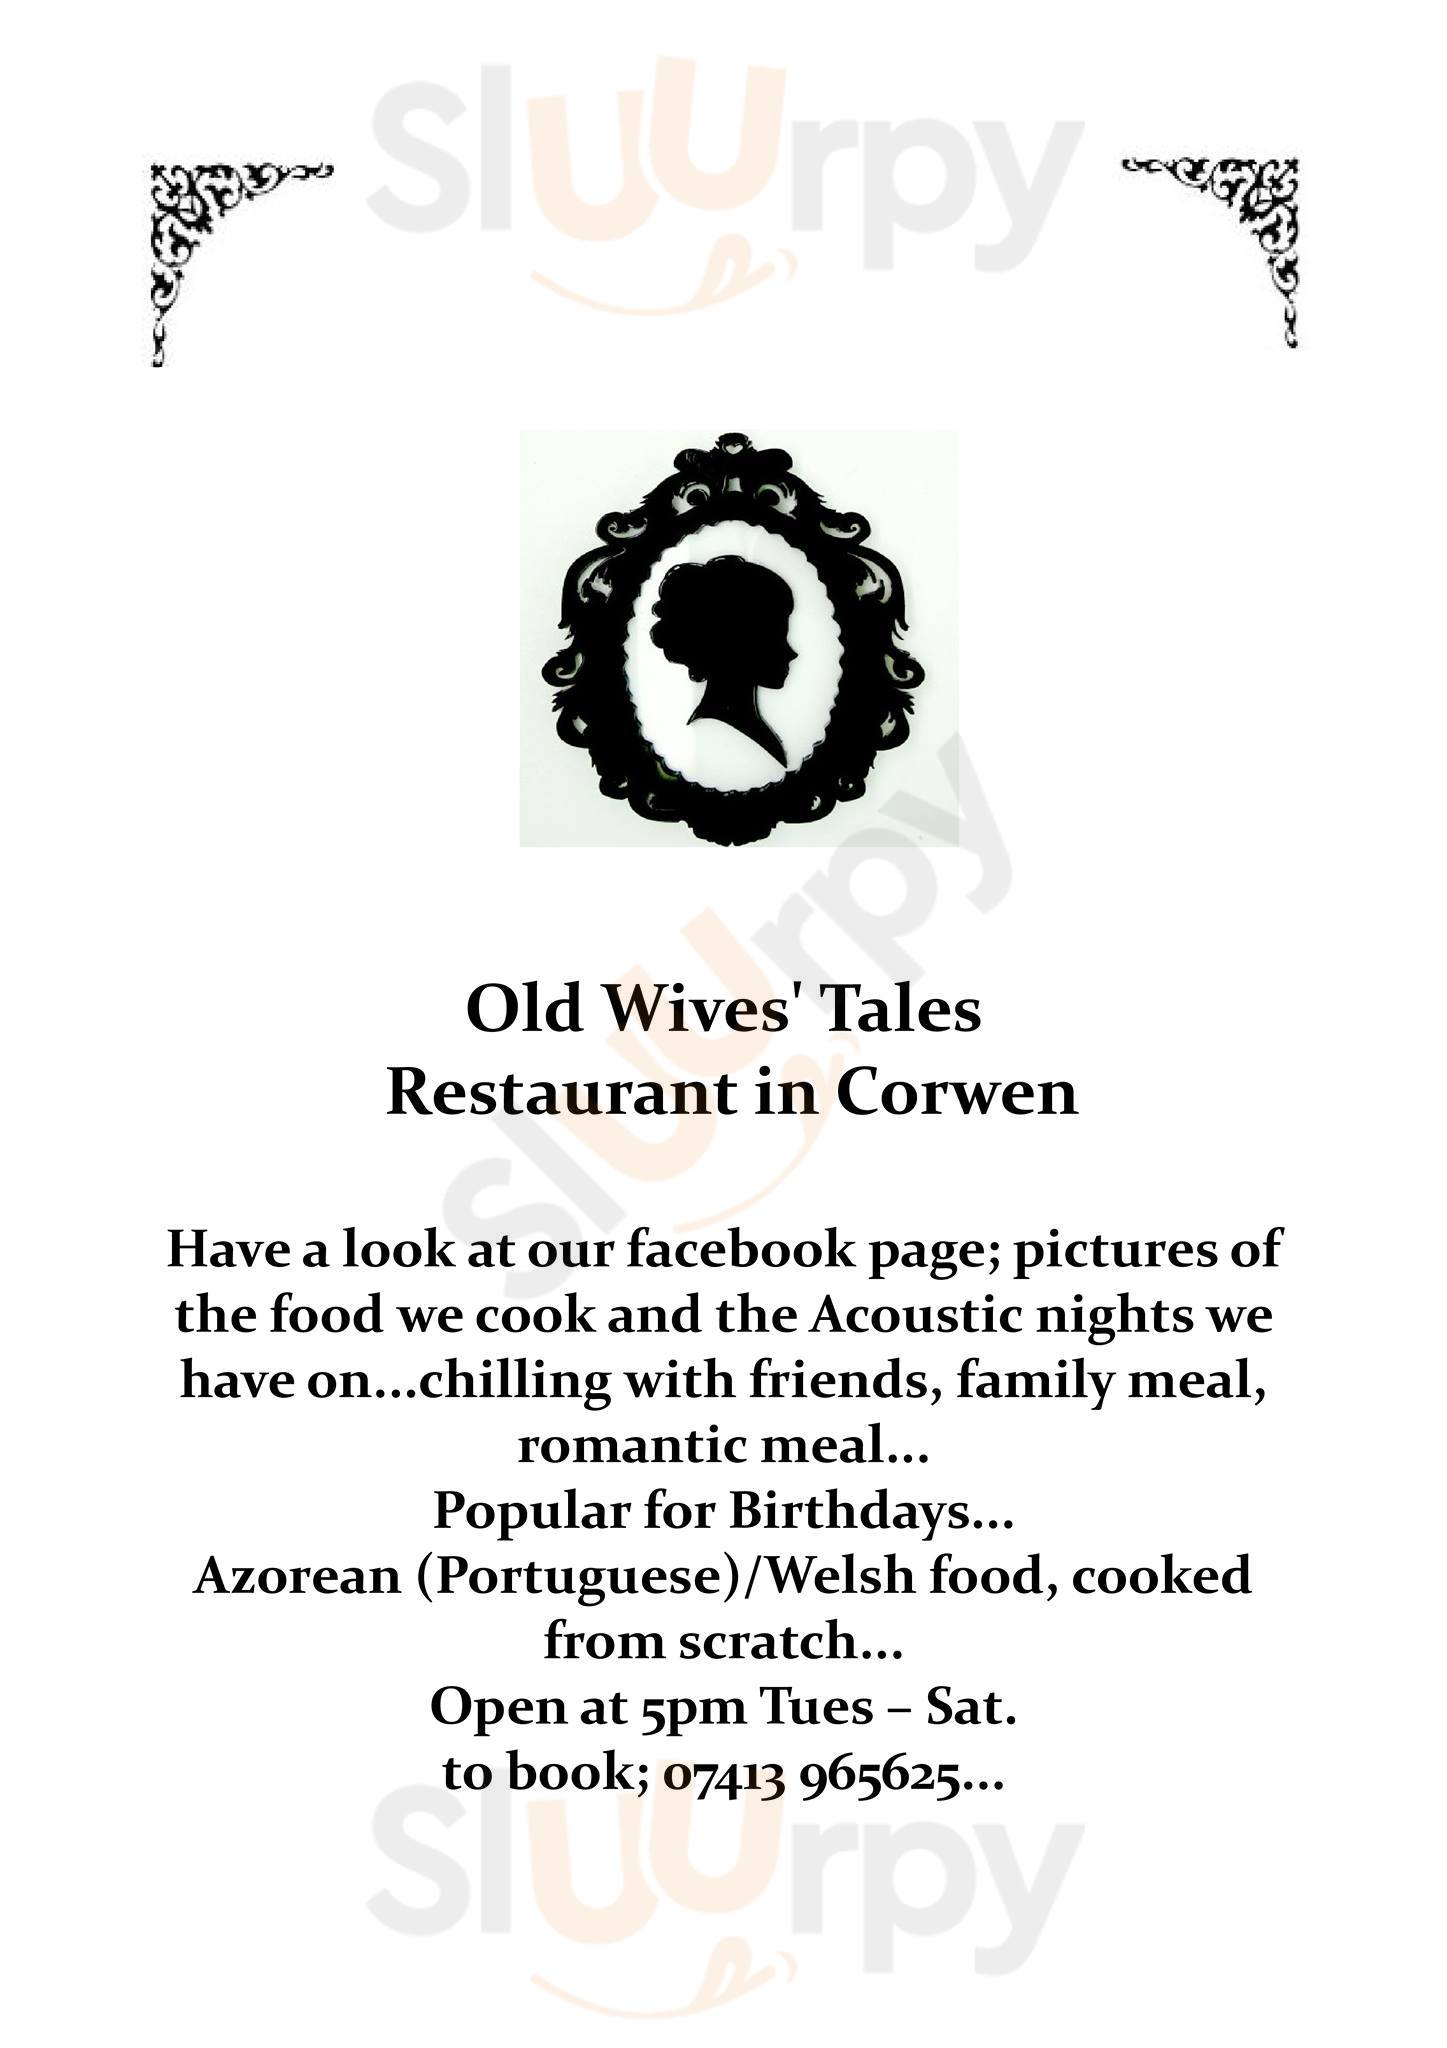 Old Wives' Tales Corwen Menu - 1